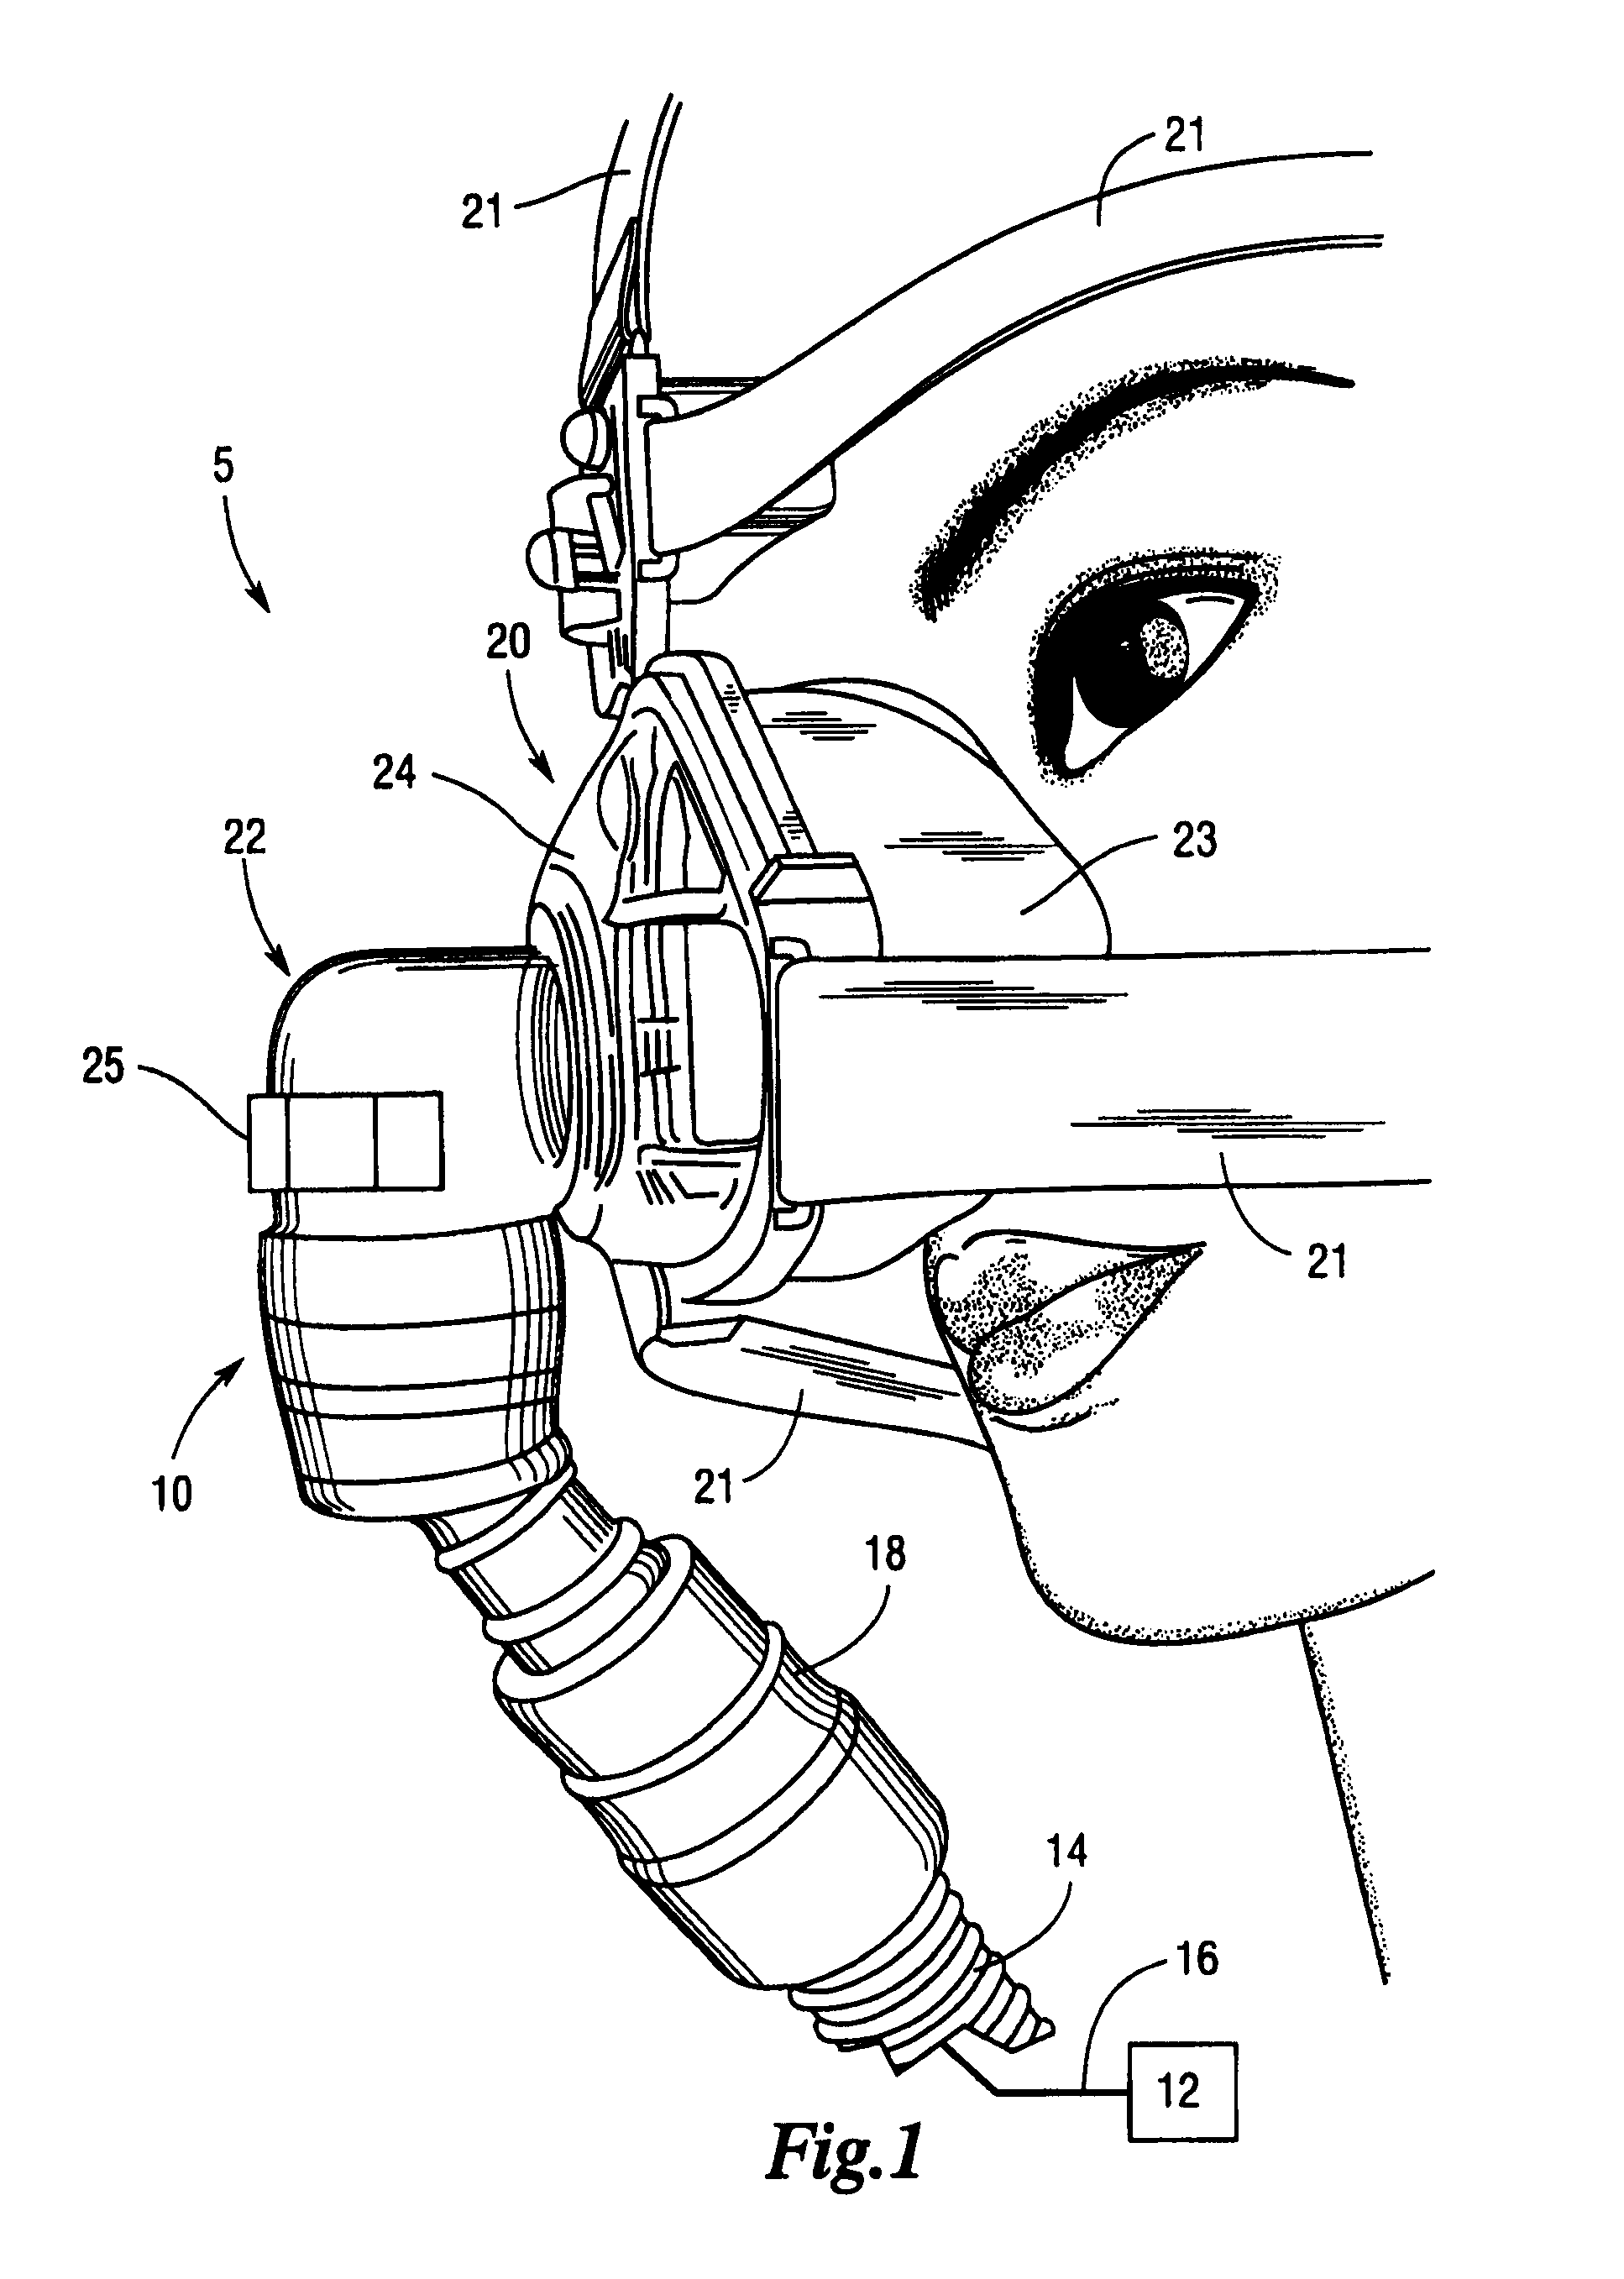 Flexible connector